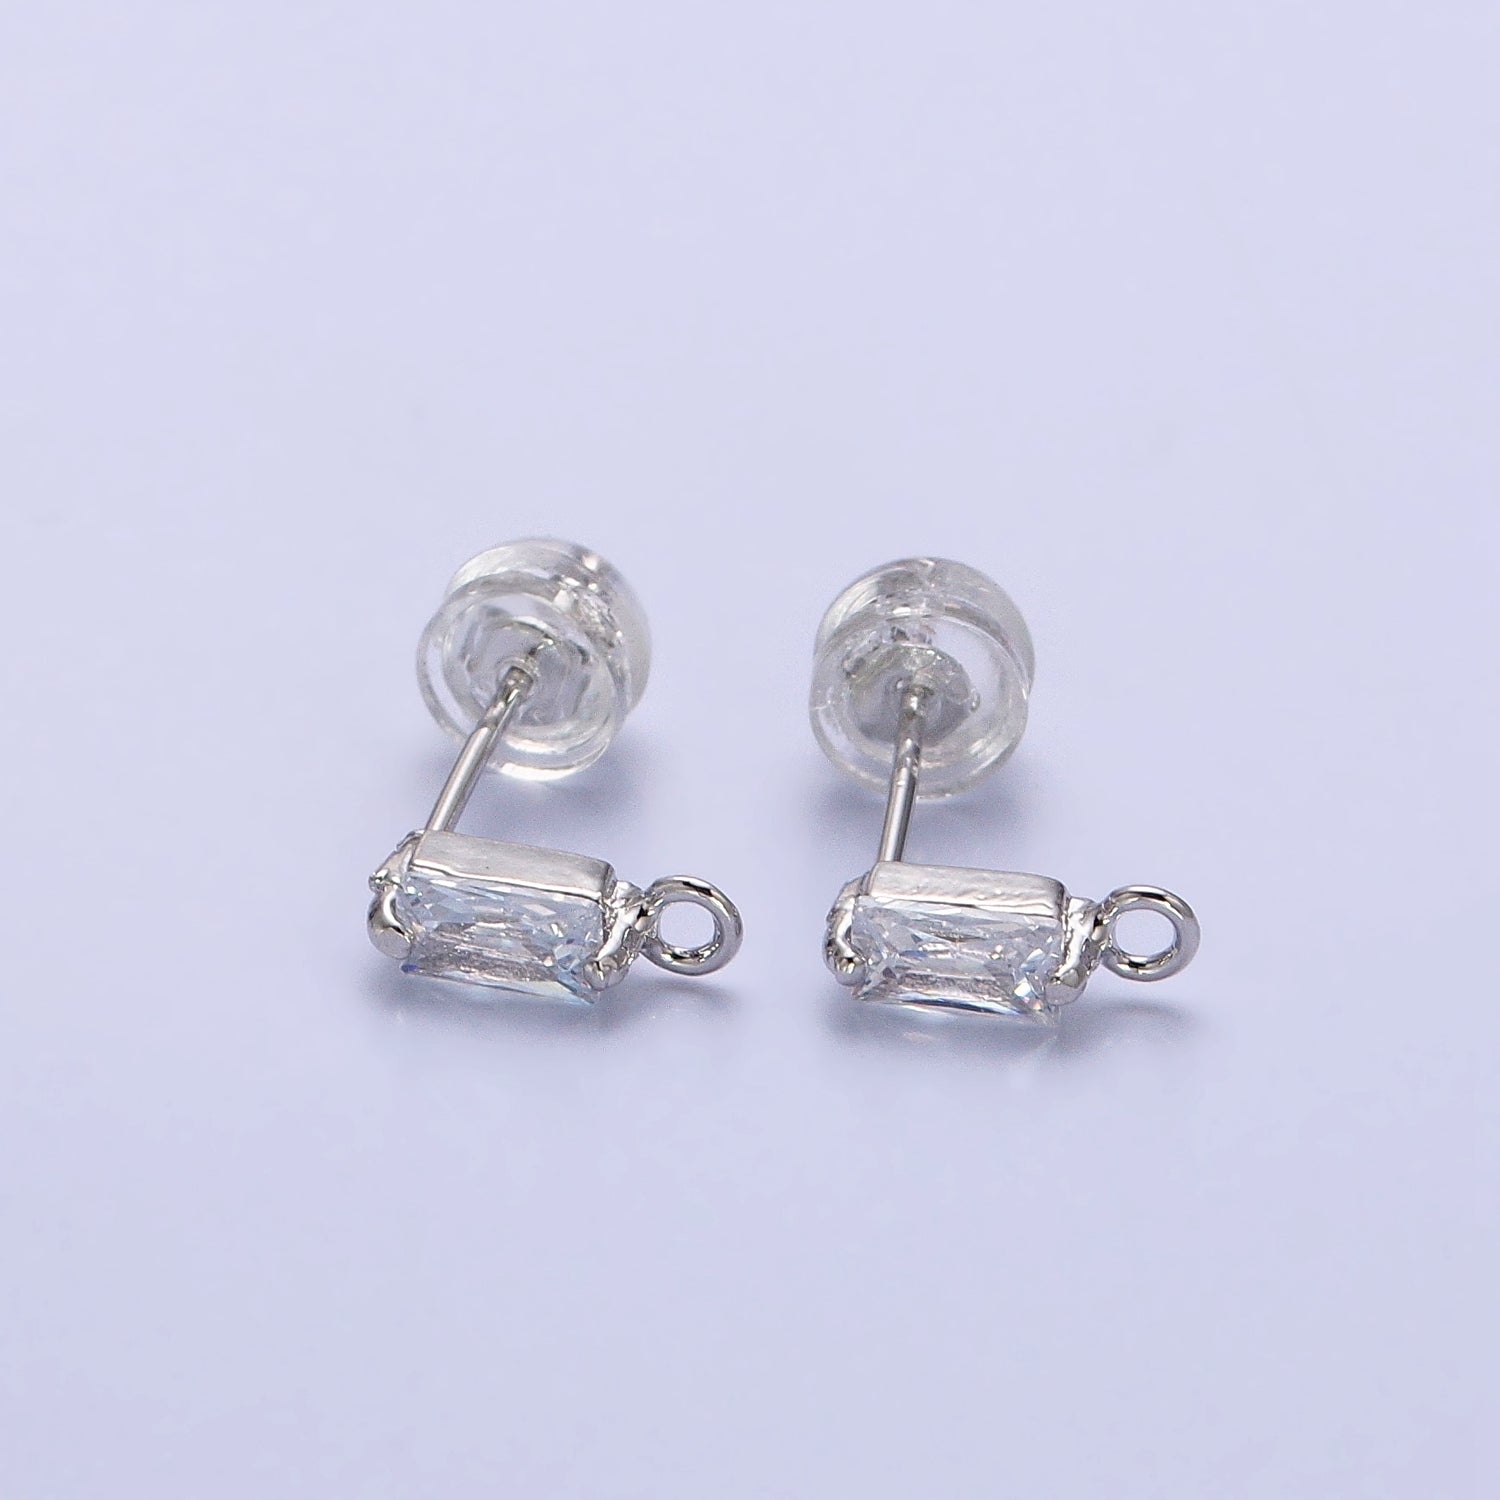 Emerald Cut CZ Diamond Stud Earring Gold Earring Post with Open Link for Earring Supply Z178 Z179 - DLUXCA